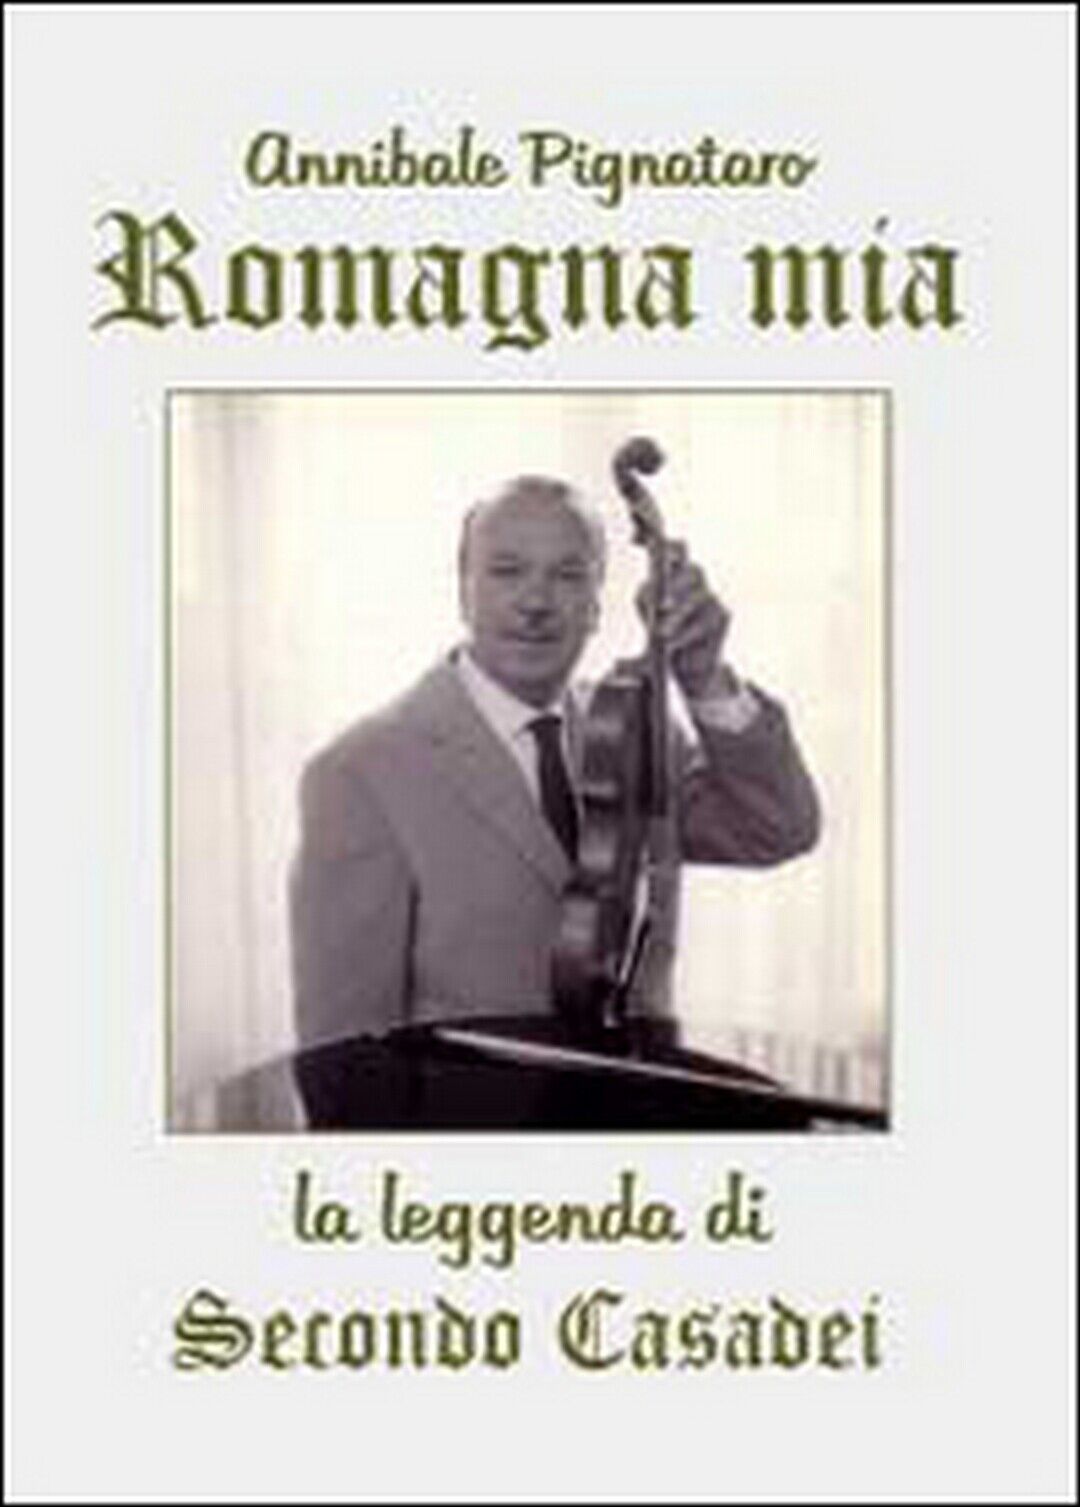 Romagna mia. La leggenda di Secondo Casadei,  di Annibale Pignataro,  2014